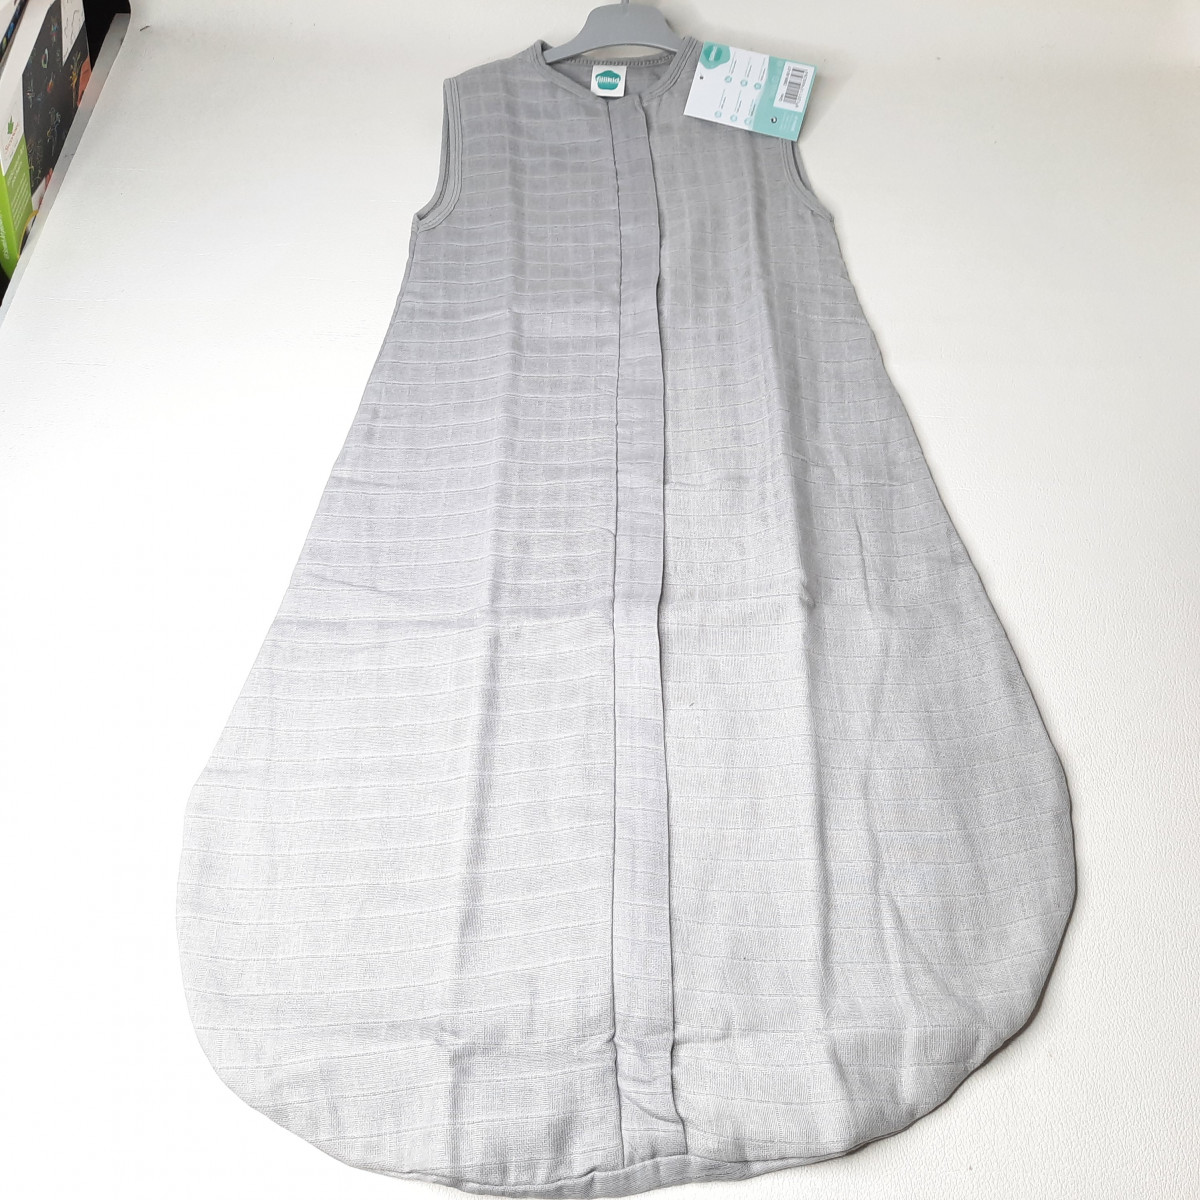 Sac de couchage gris été Tétra 100% coton - 2988-90-07 - photo 6